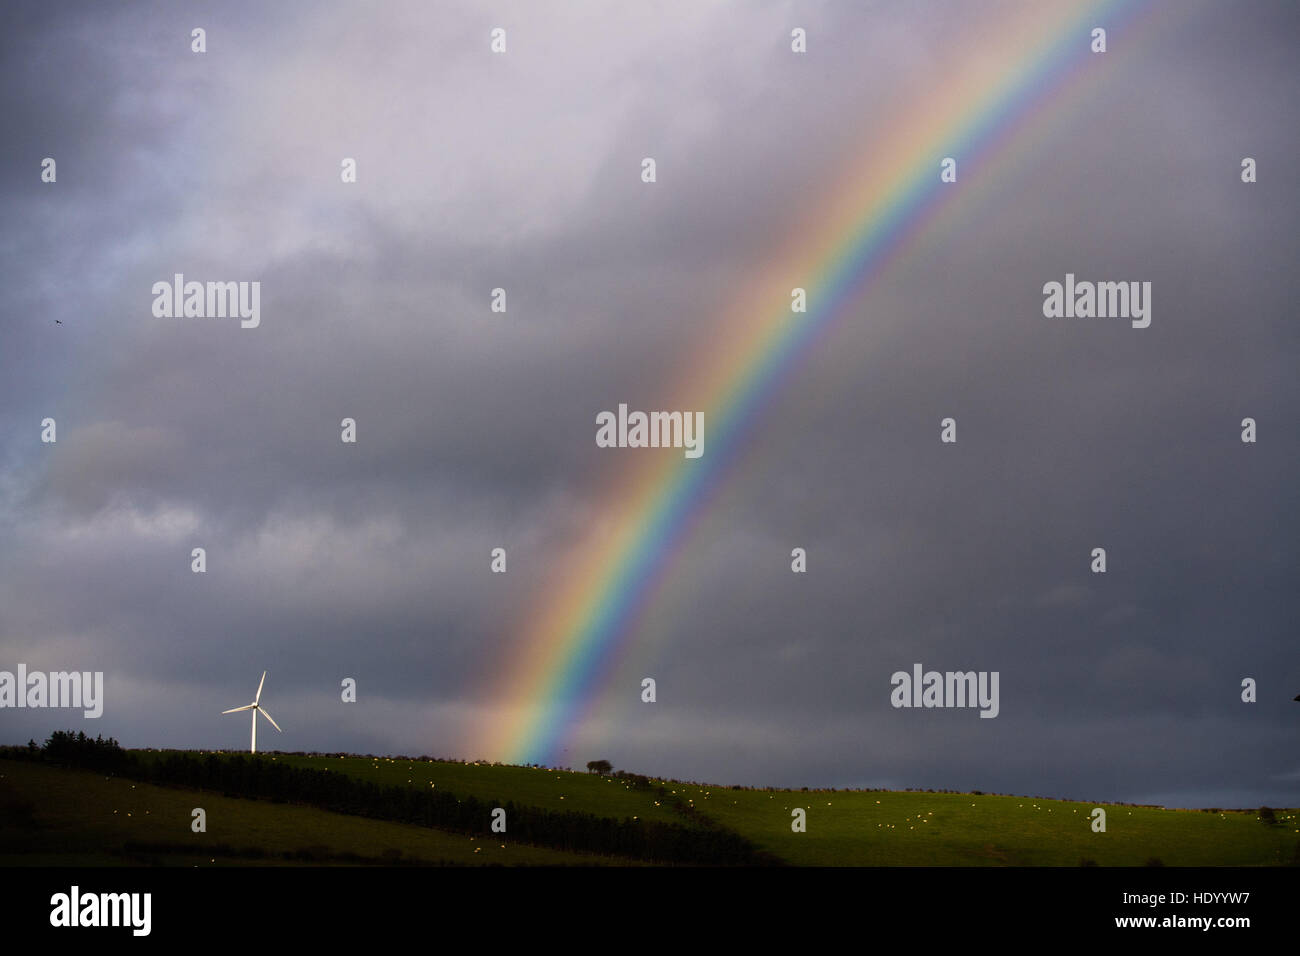 Aberystwyth Wales UK, giovedì 15 dicembre 2016 UK meteo: in un luminoso intervallo tra le docce un bellissimo arcobaleno colpisce una collina nei pressi di una turbina eolica nella periferia di Aberystwyth foto © Keith Morris/Alamy Live News Foto Stock